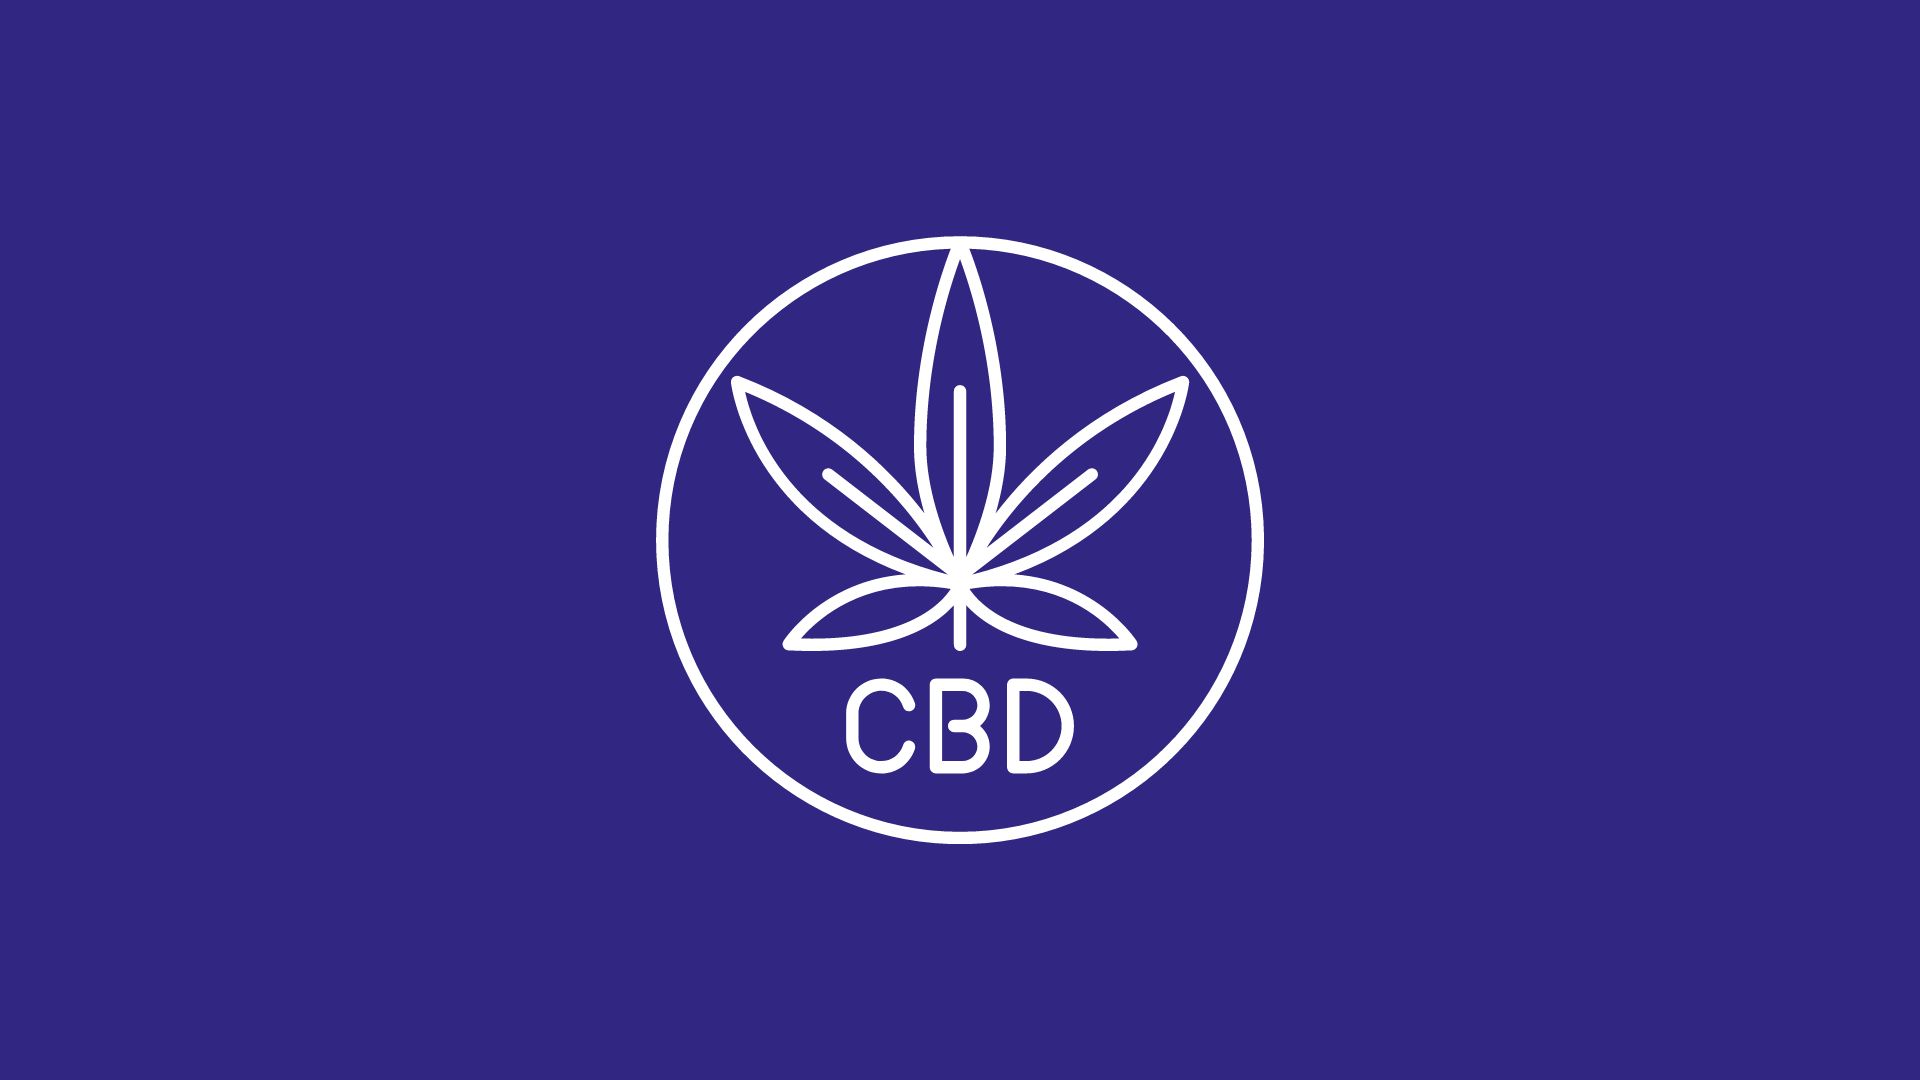 Image avec logo et symbole de CBD sur fond violet aux couleurs de l'association L630